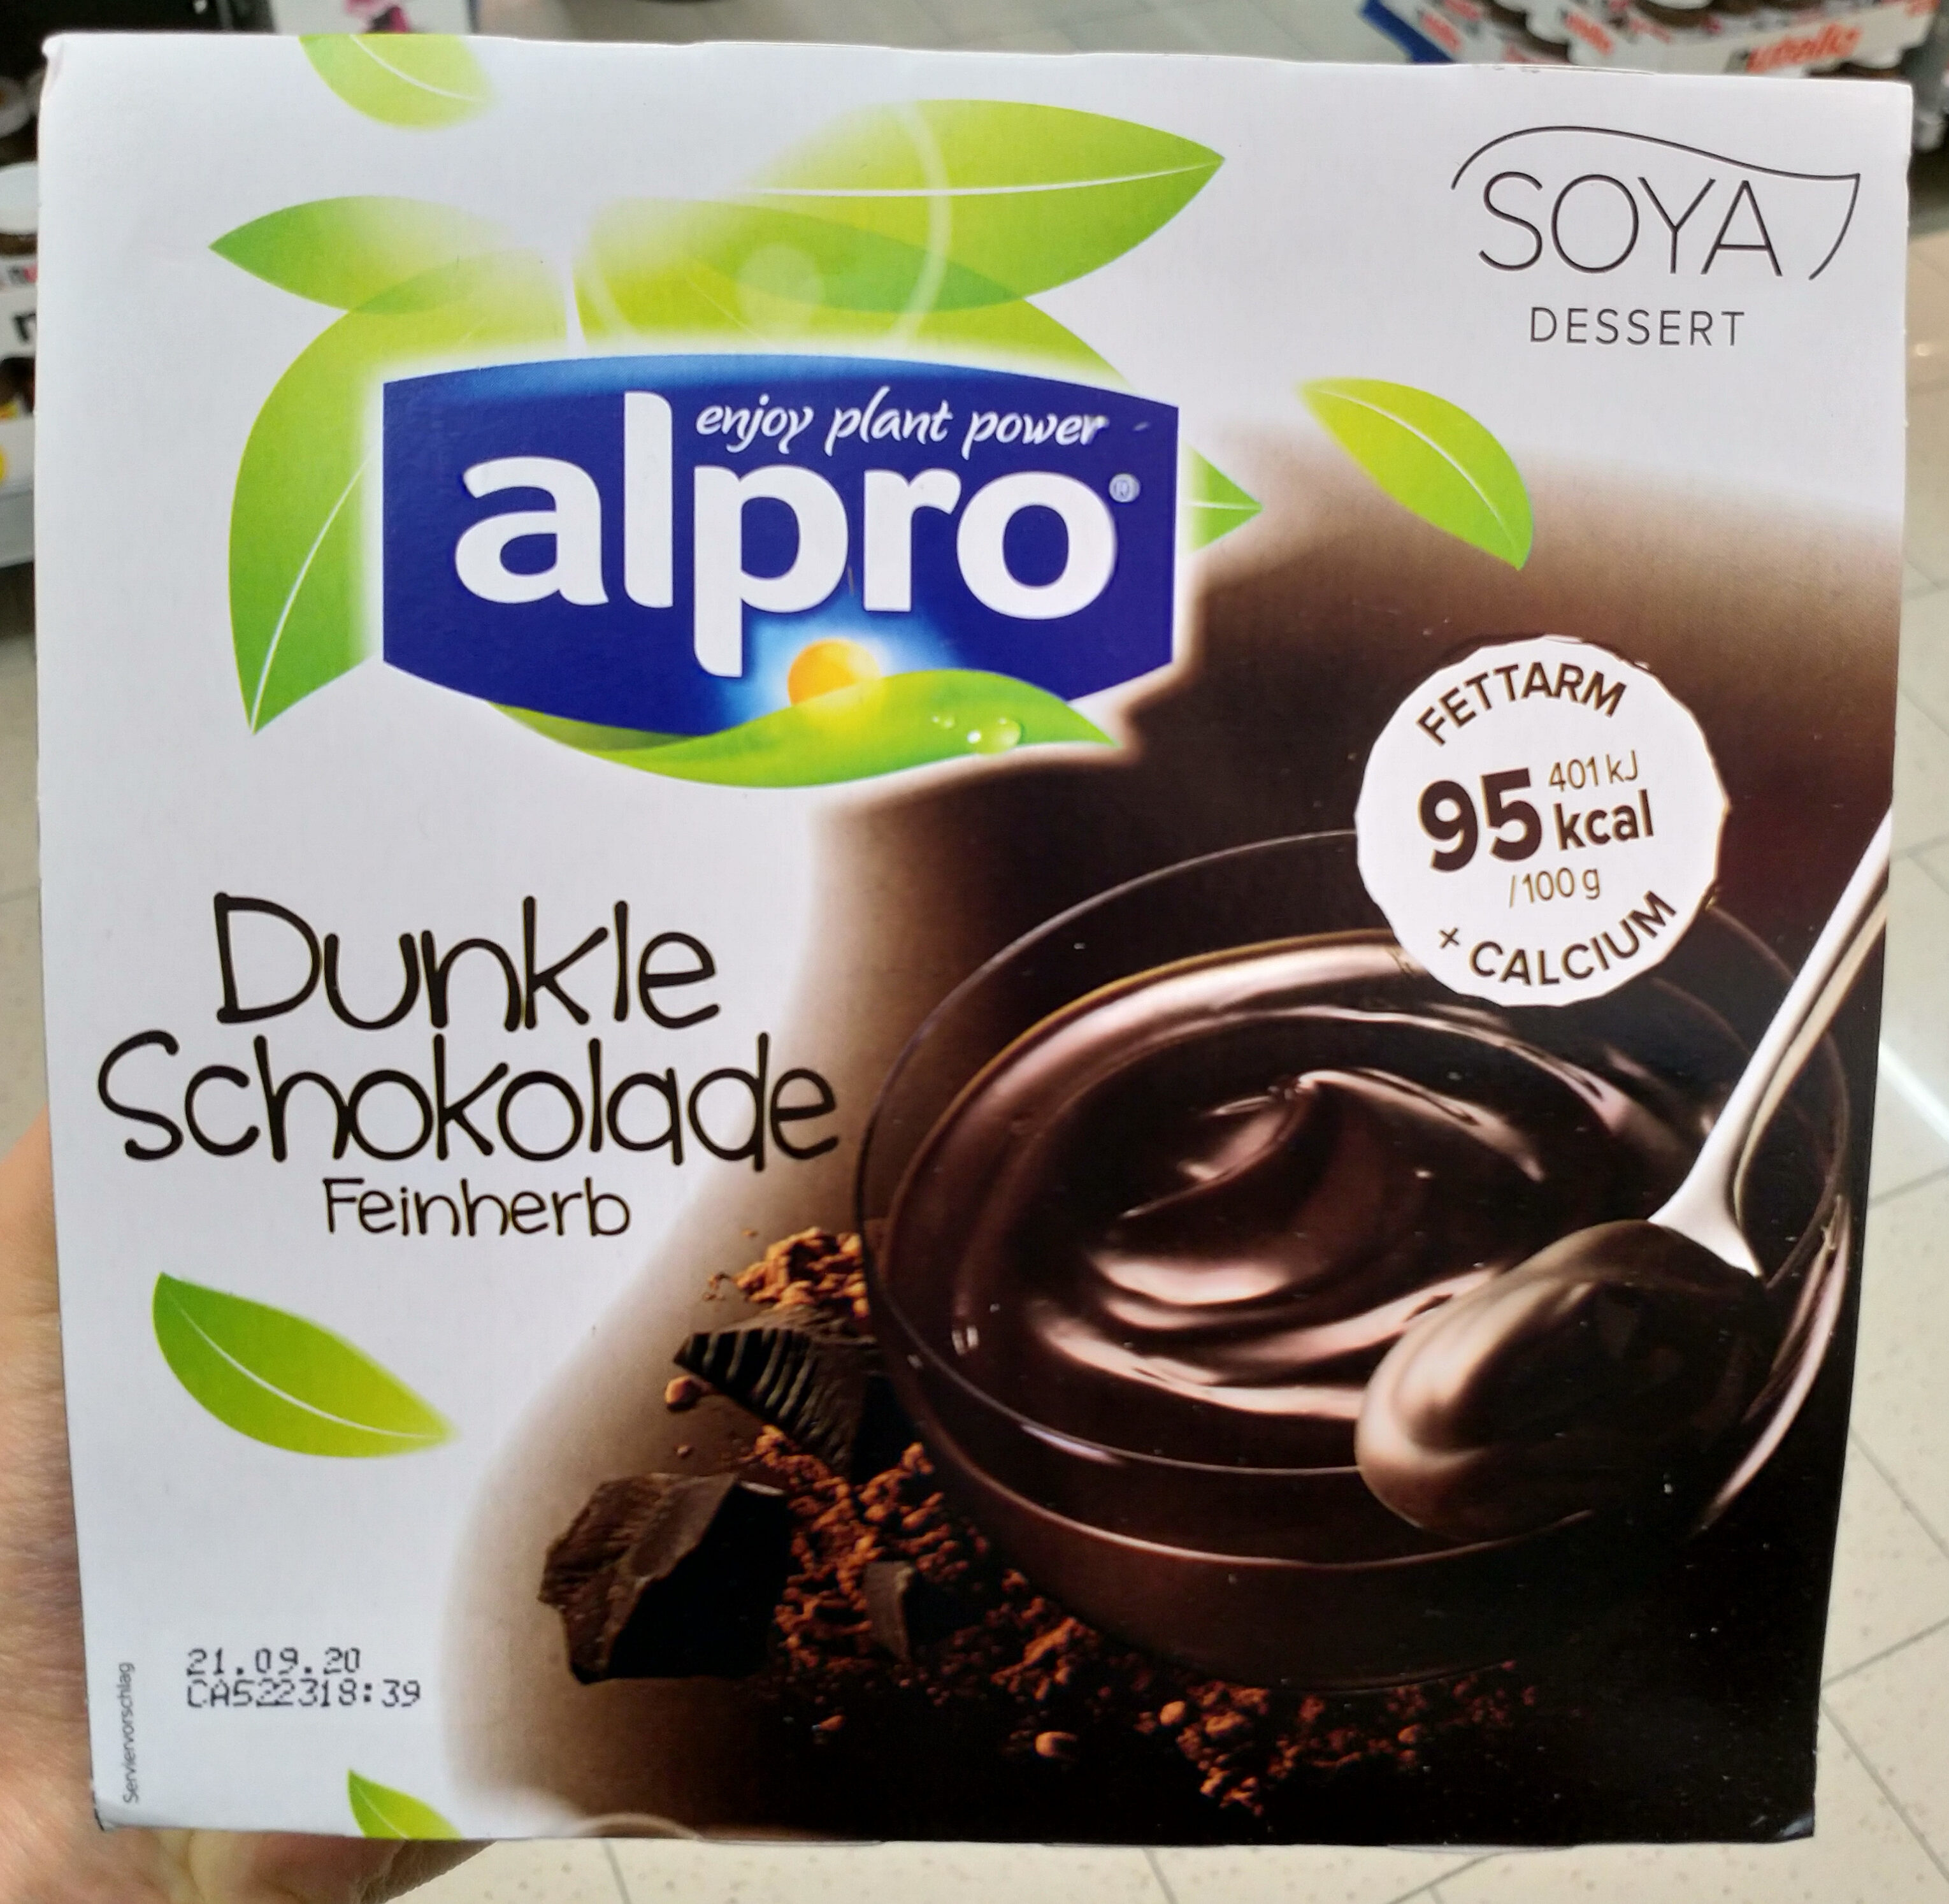 Soya Dessert dunkel Schokolade - Produit - de